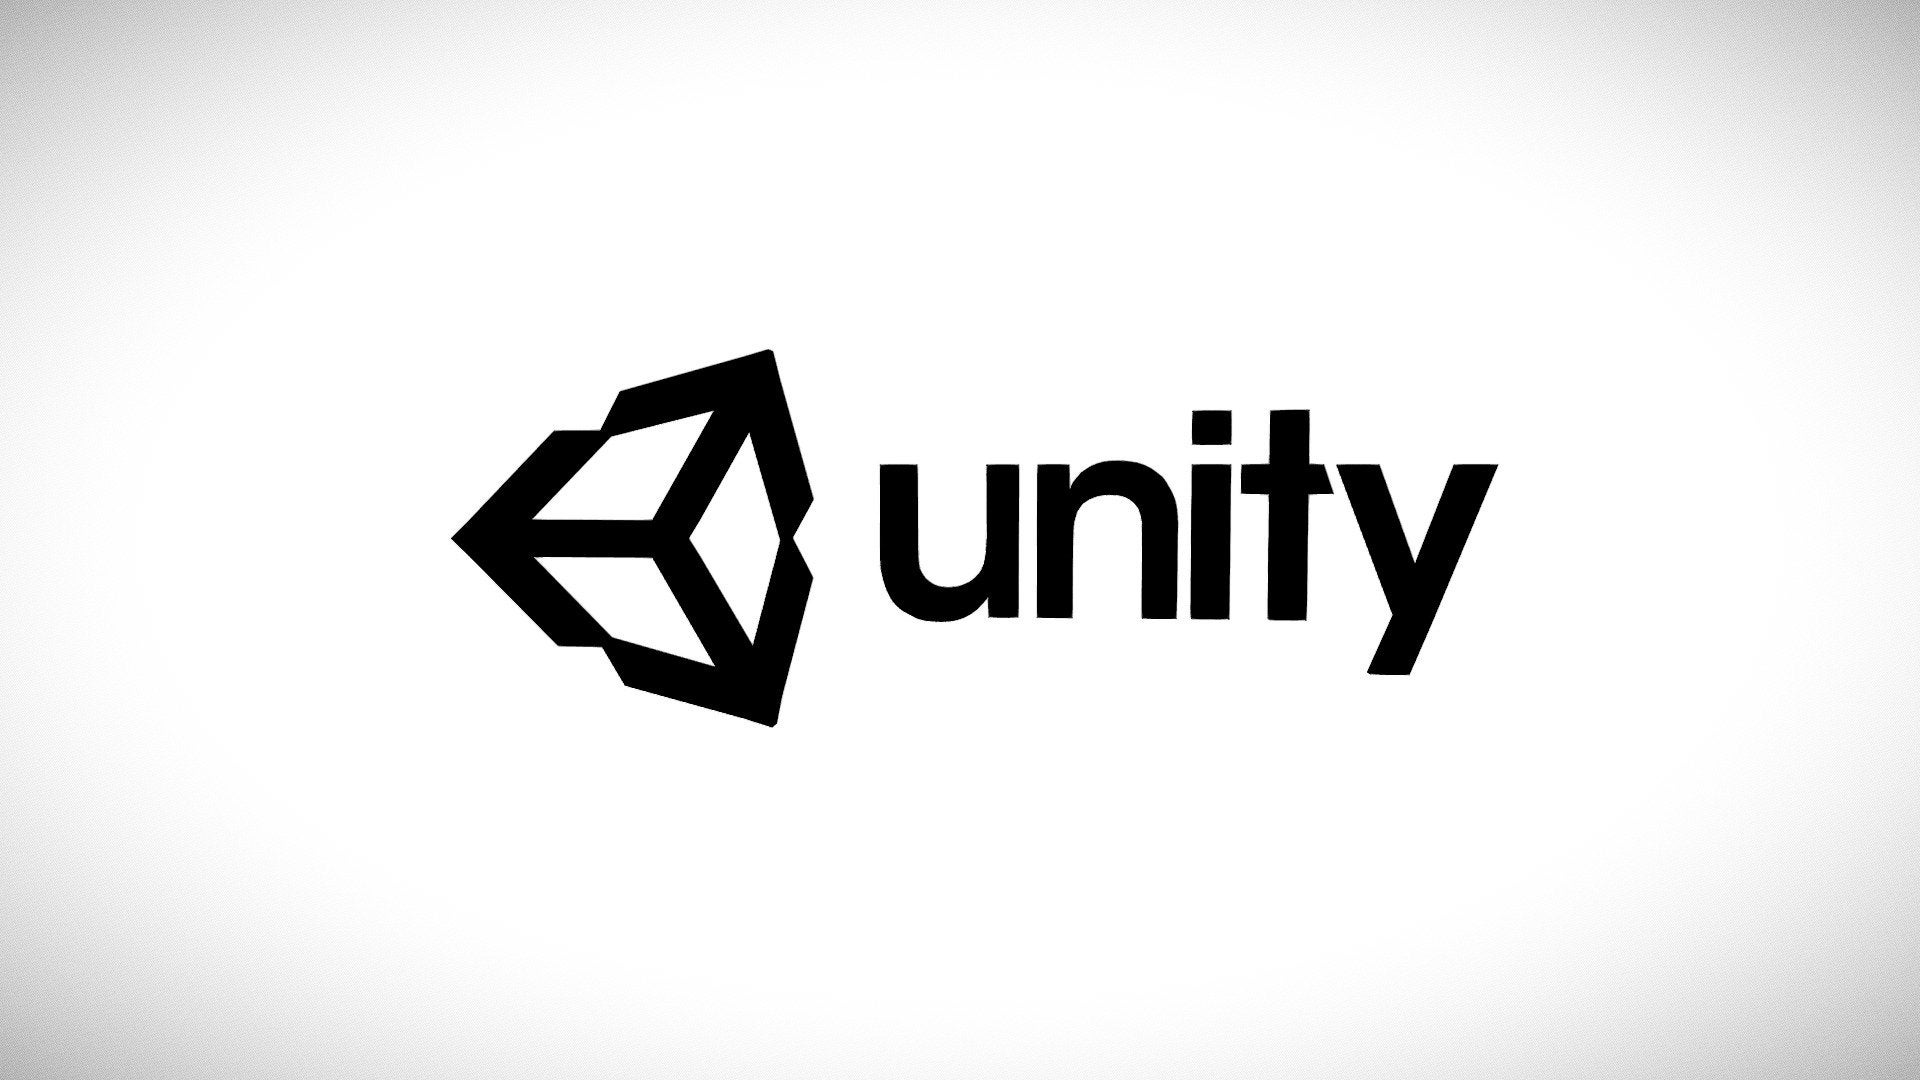 Unity envisage une offre de 17,5 milliards de dollars de la société de technologie mobile AppLovin